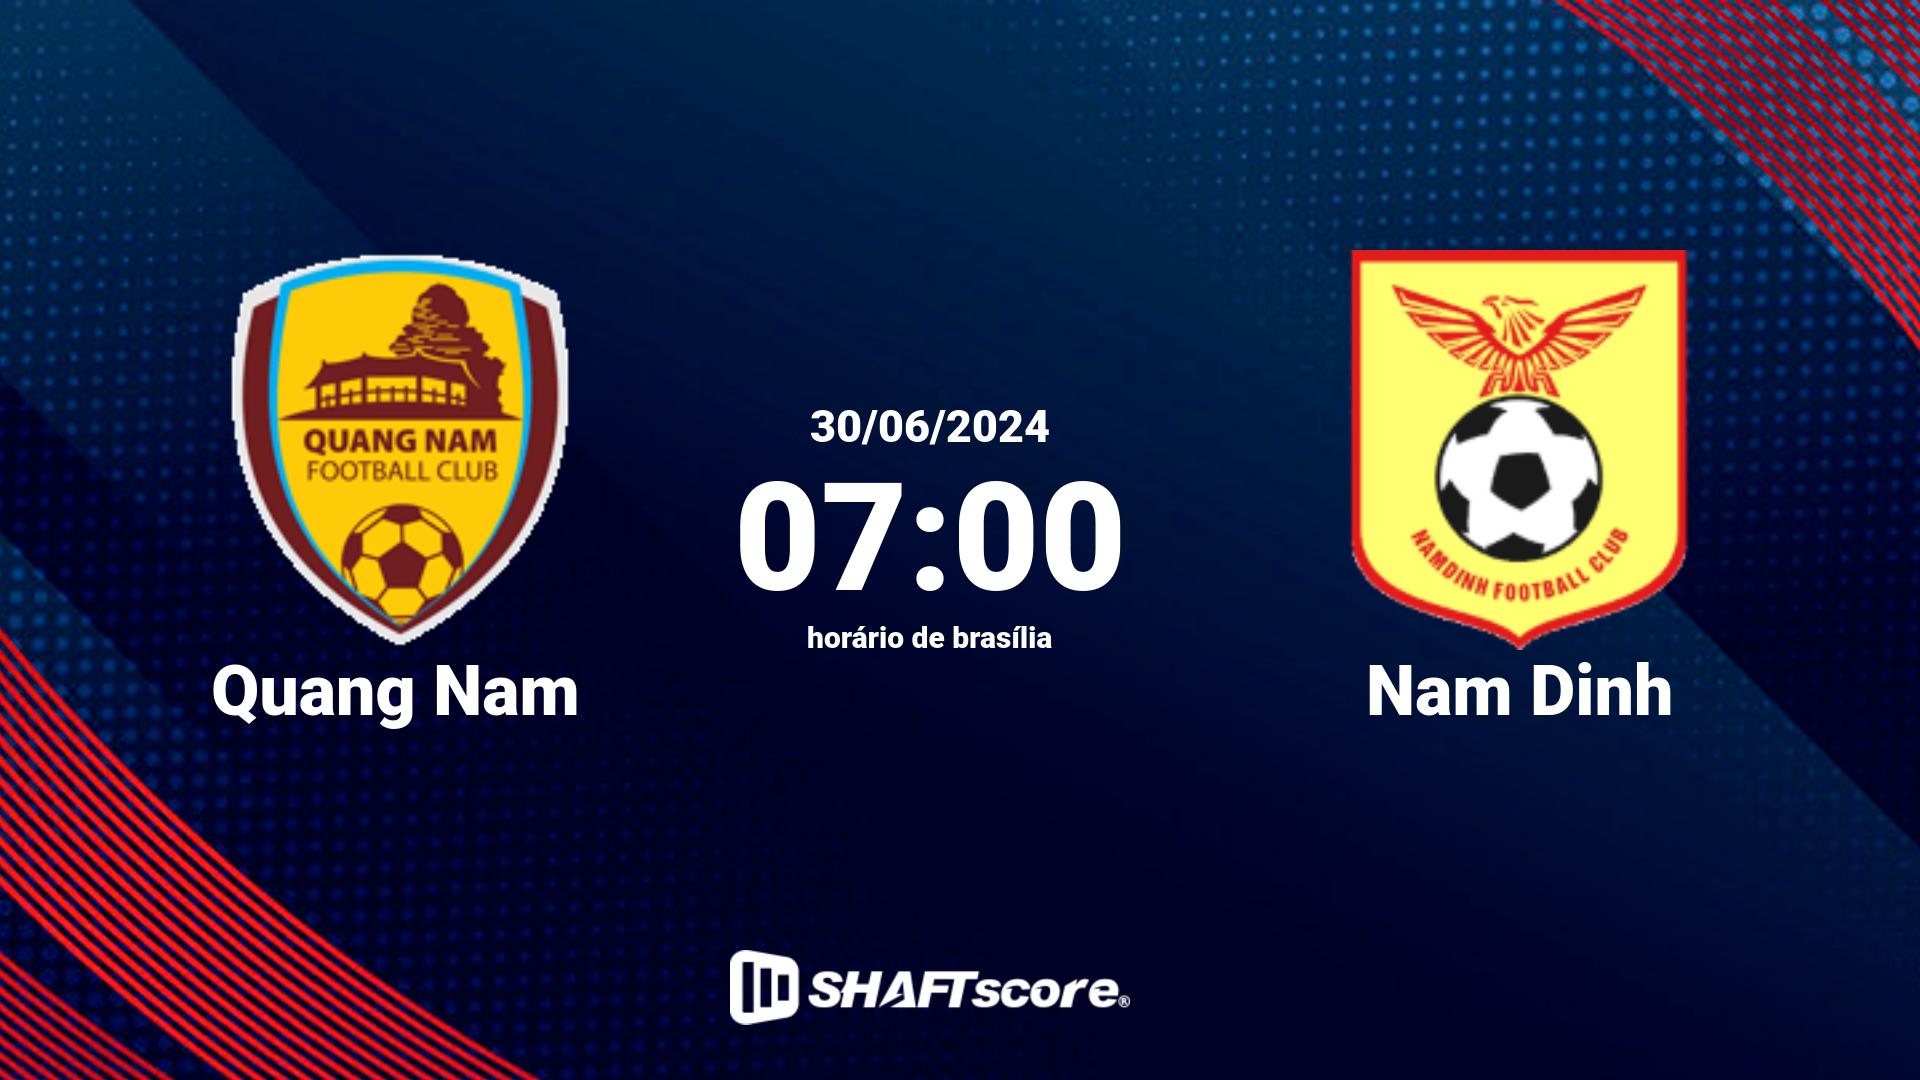 Estatísticas do jogo Quang Nam vs Nam Dinh 30.06 07:00